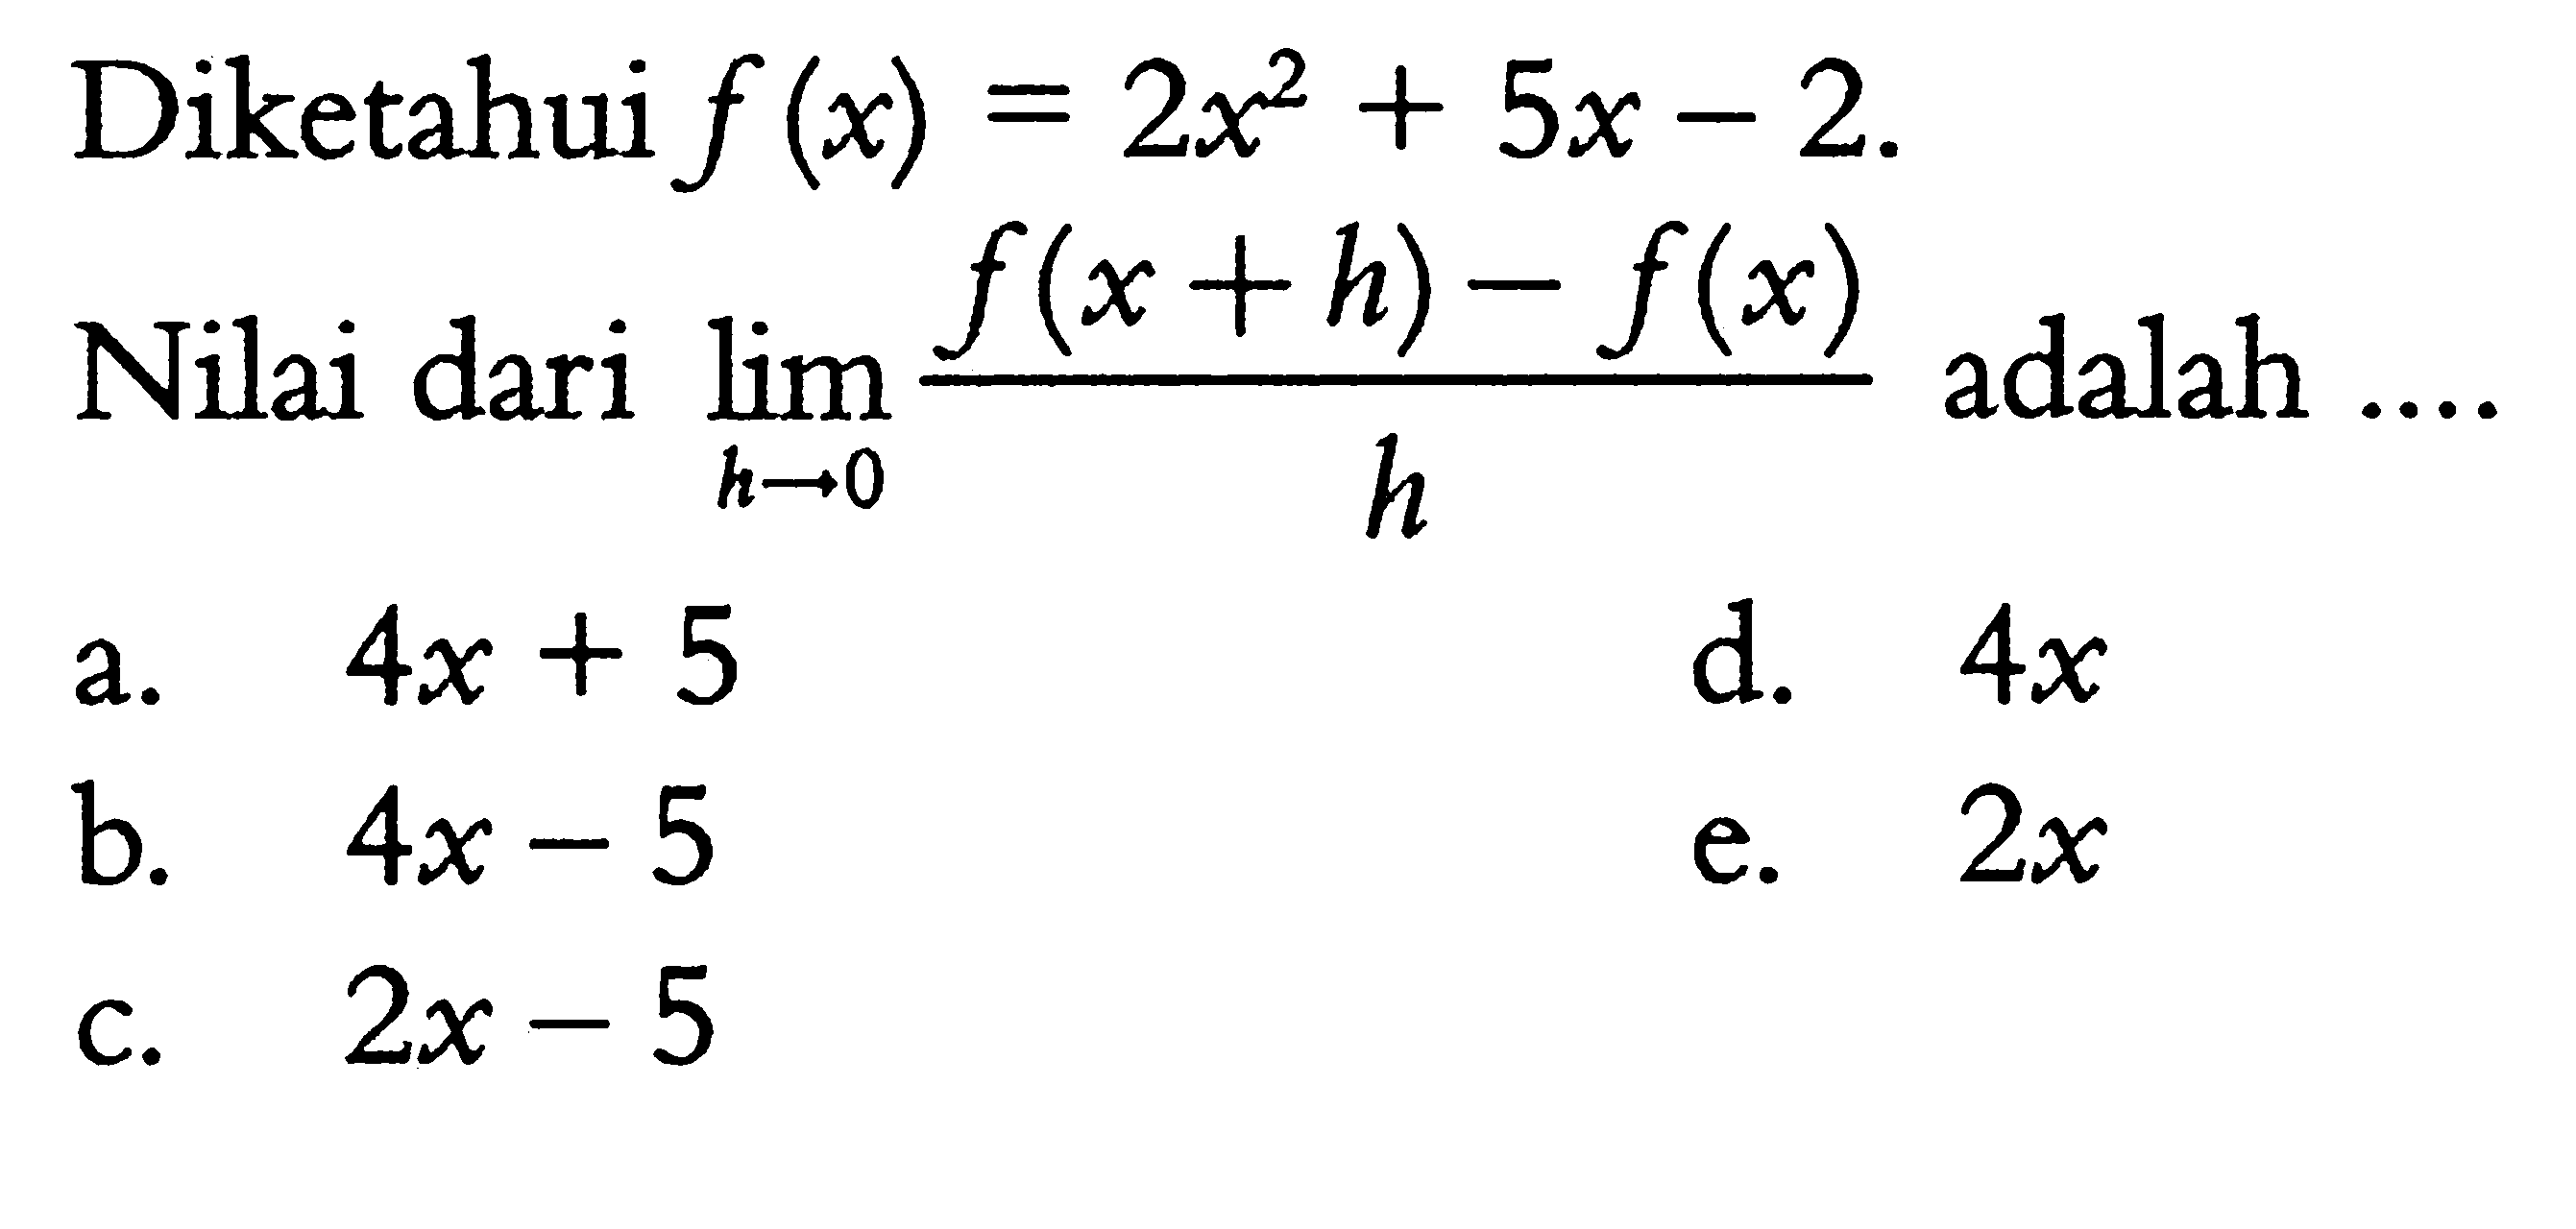 Diketahui f(x)=2x^2+5x-2Nilai dari lim  h->0 (f(x+h)-f(x))/(h) adalah ....